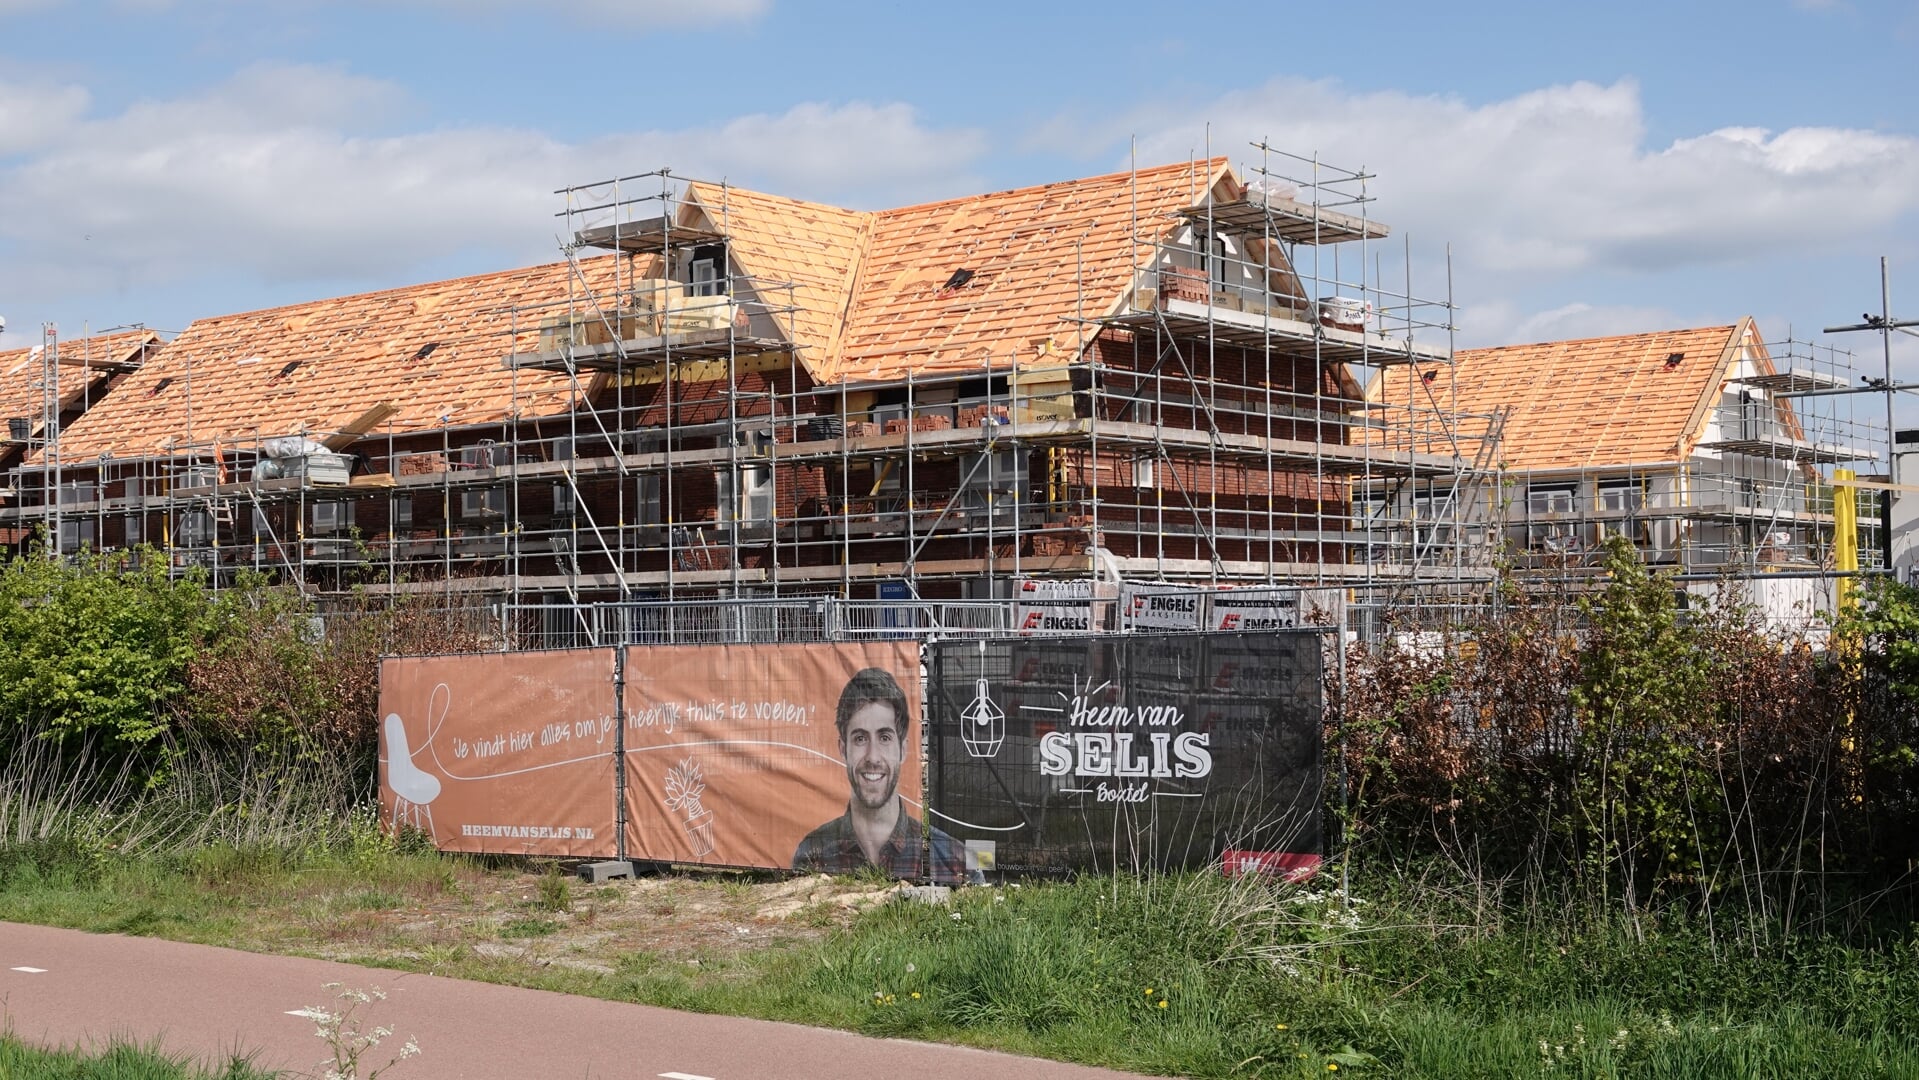 Heem van Selis is het grootste nieuwbouwproject in Boxtel van de afgelopen jaren. Het is al grotendeels voltooid. Welke nieuwe plannen op de gemeentelijke prioriteitenlijst staan, is niet openbaar.